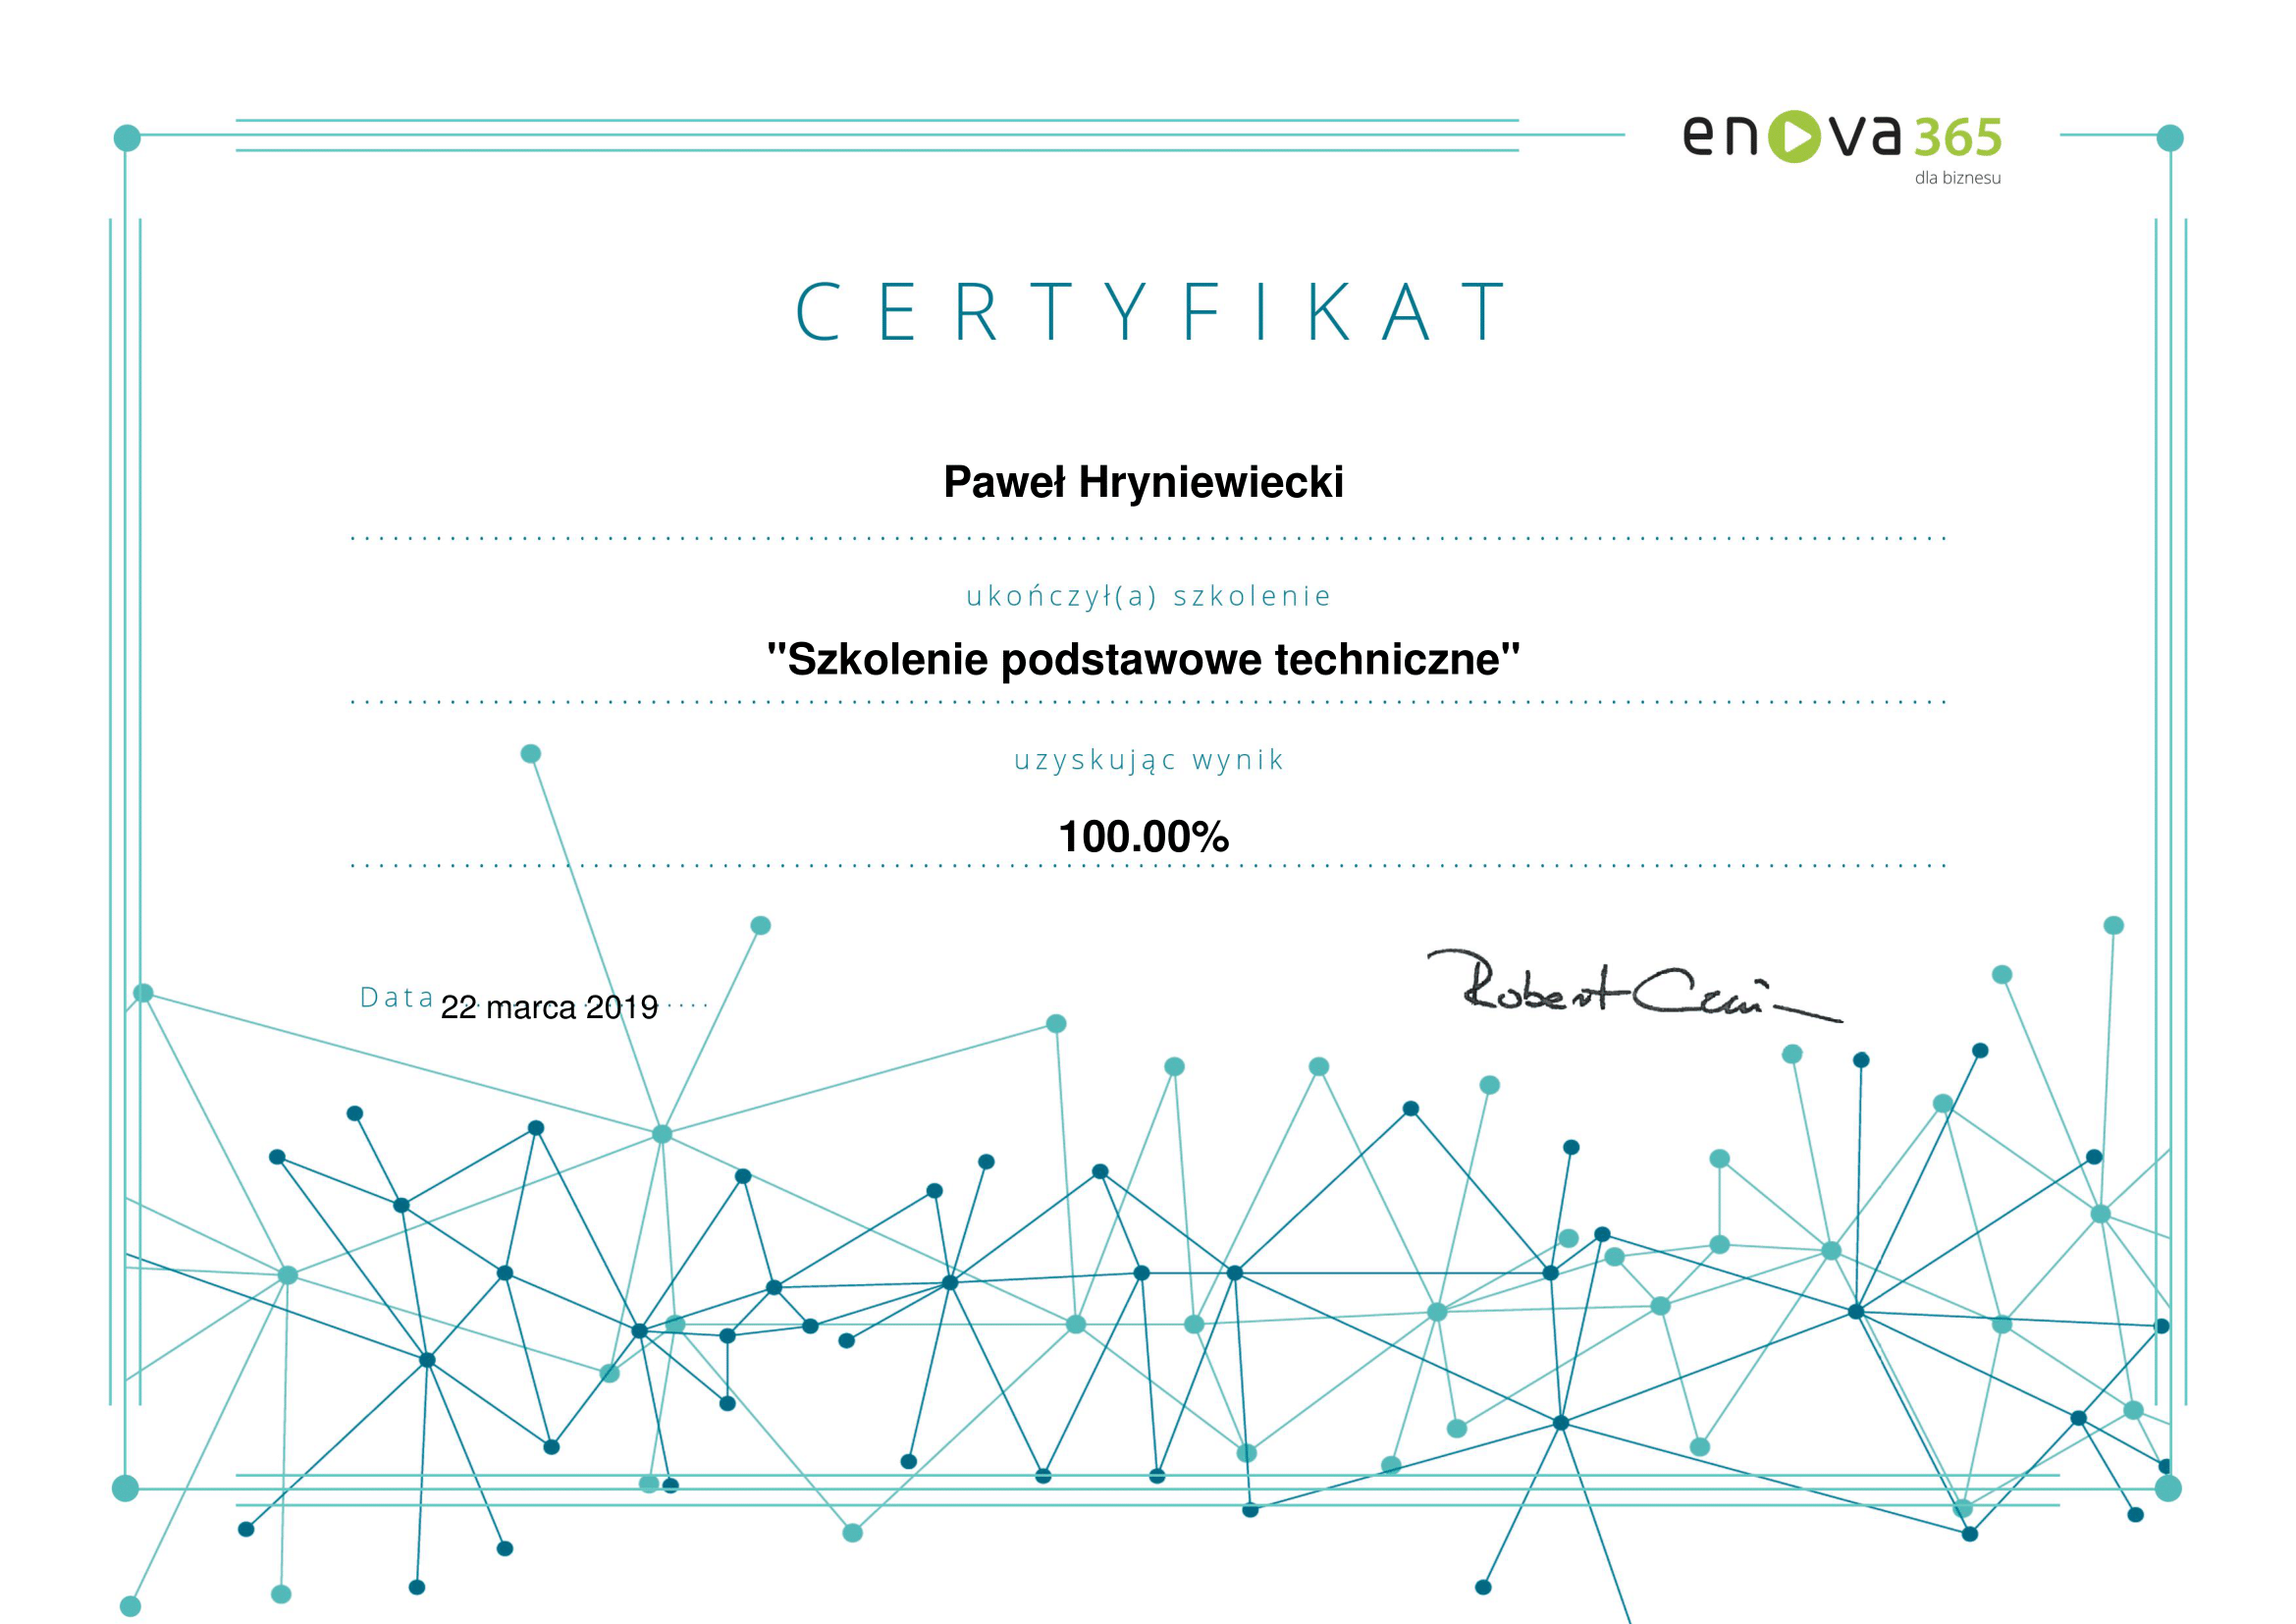 enova365_Certyfikat_podstawowy_techniczne